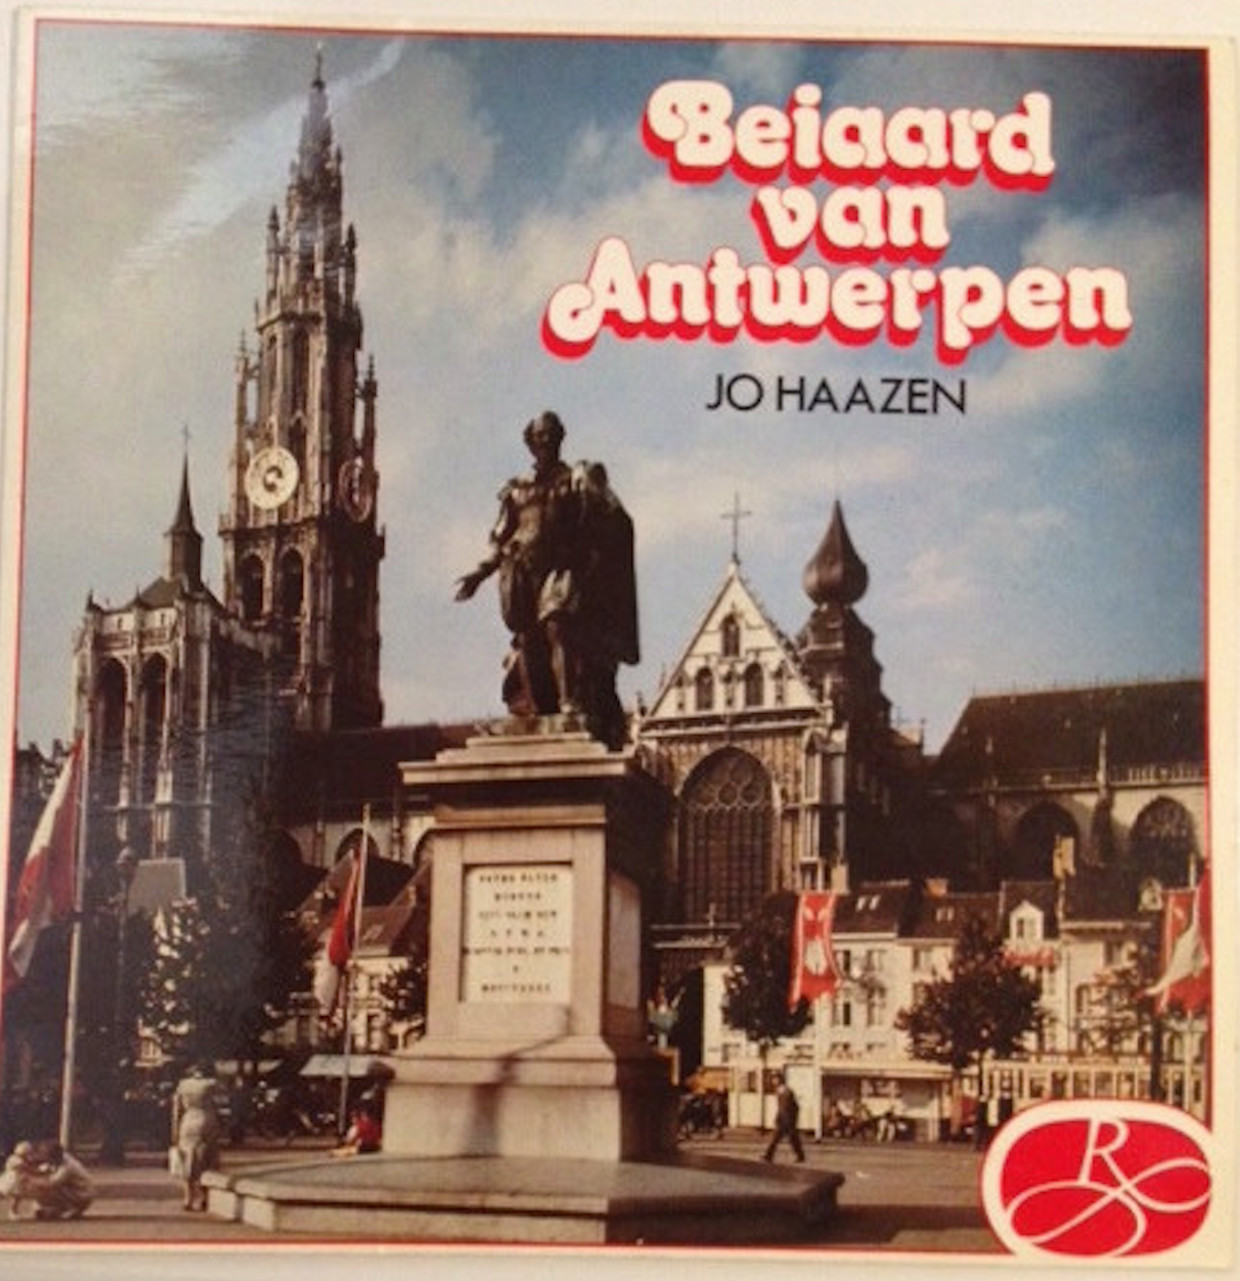 Beiaard van Antwerpen
Jo Haazen Beeld rv